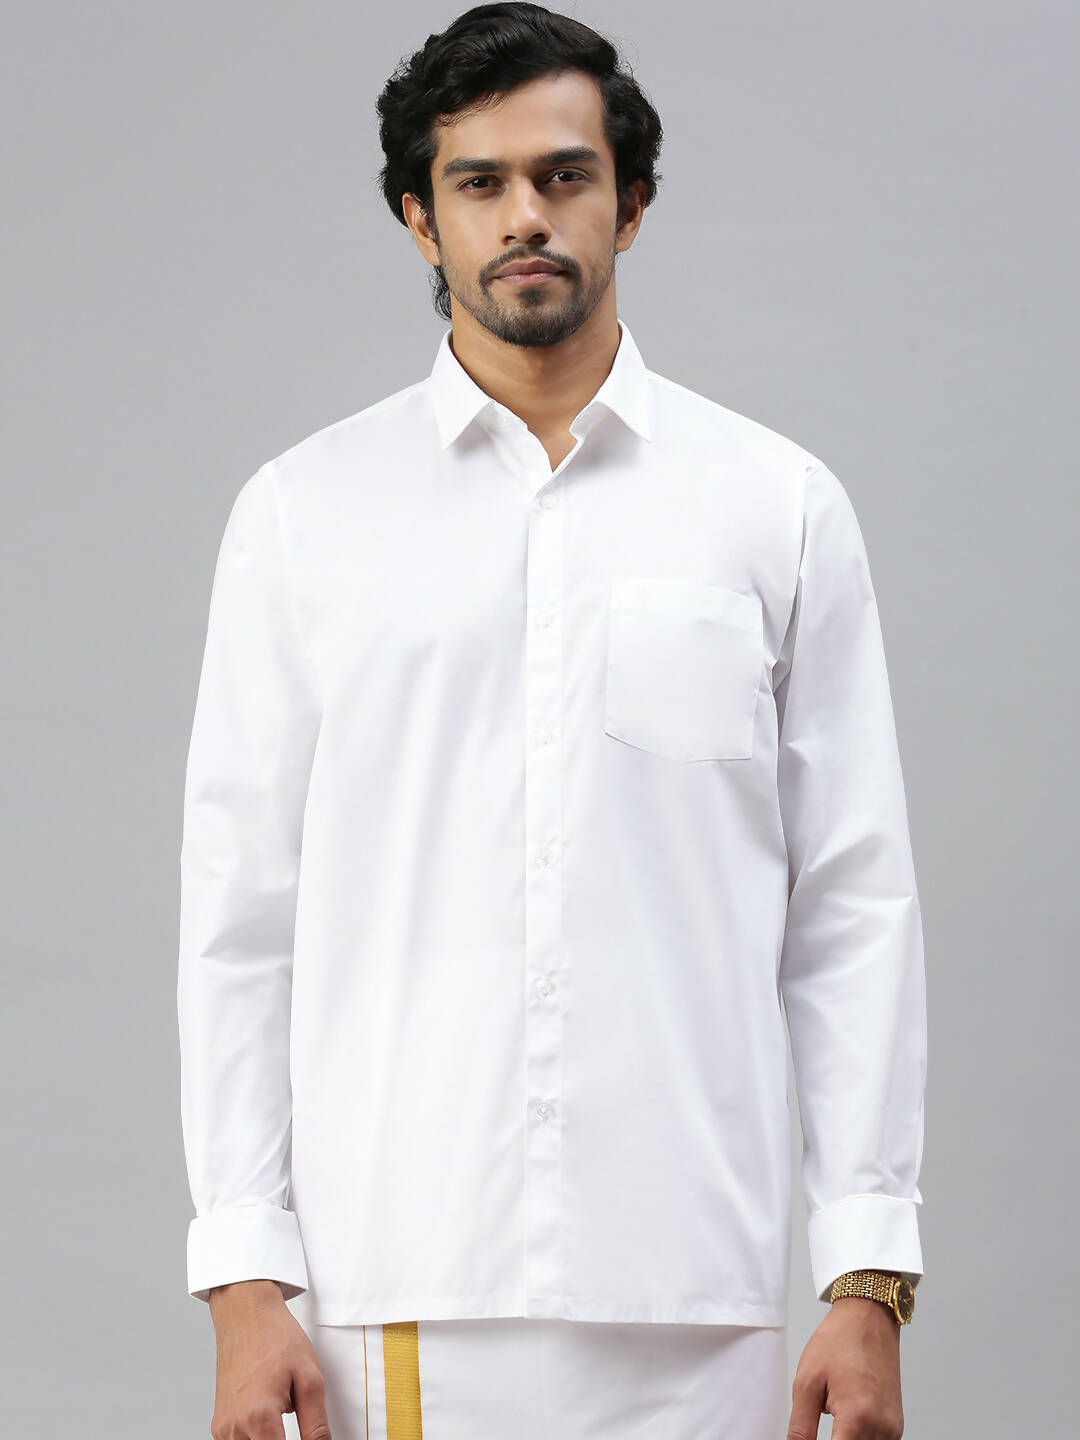 Buy Ramraj Cotton Mens Full Sleeve Formal Poly Cotton White Shirt